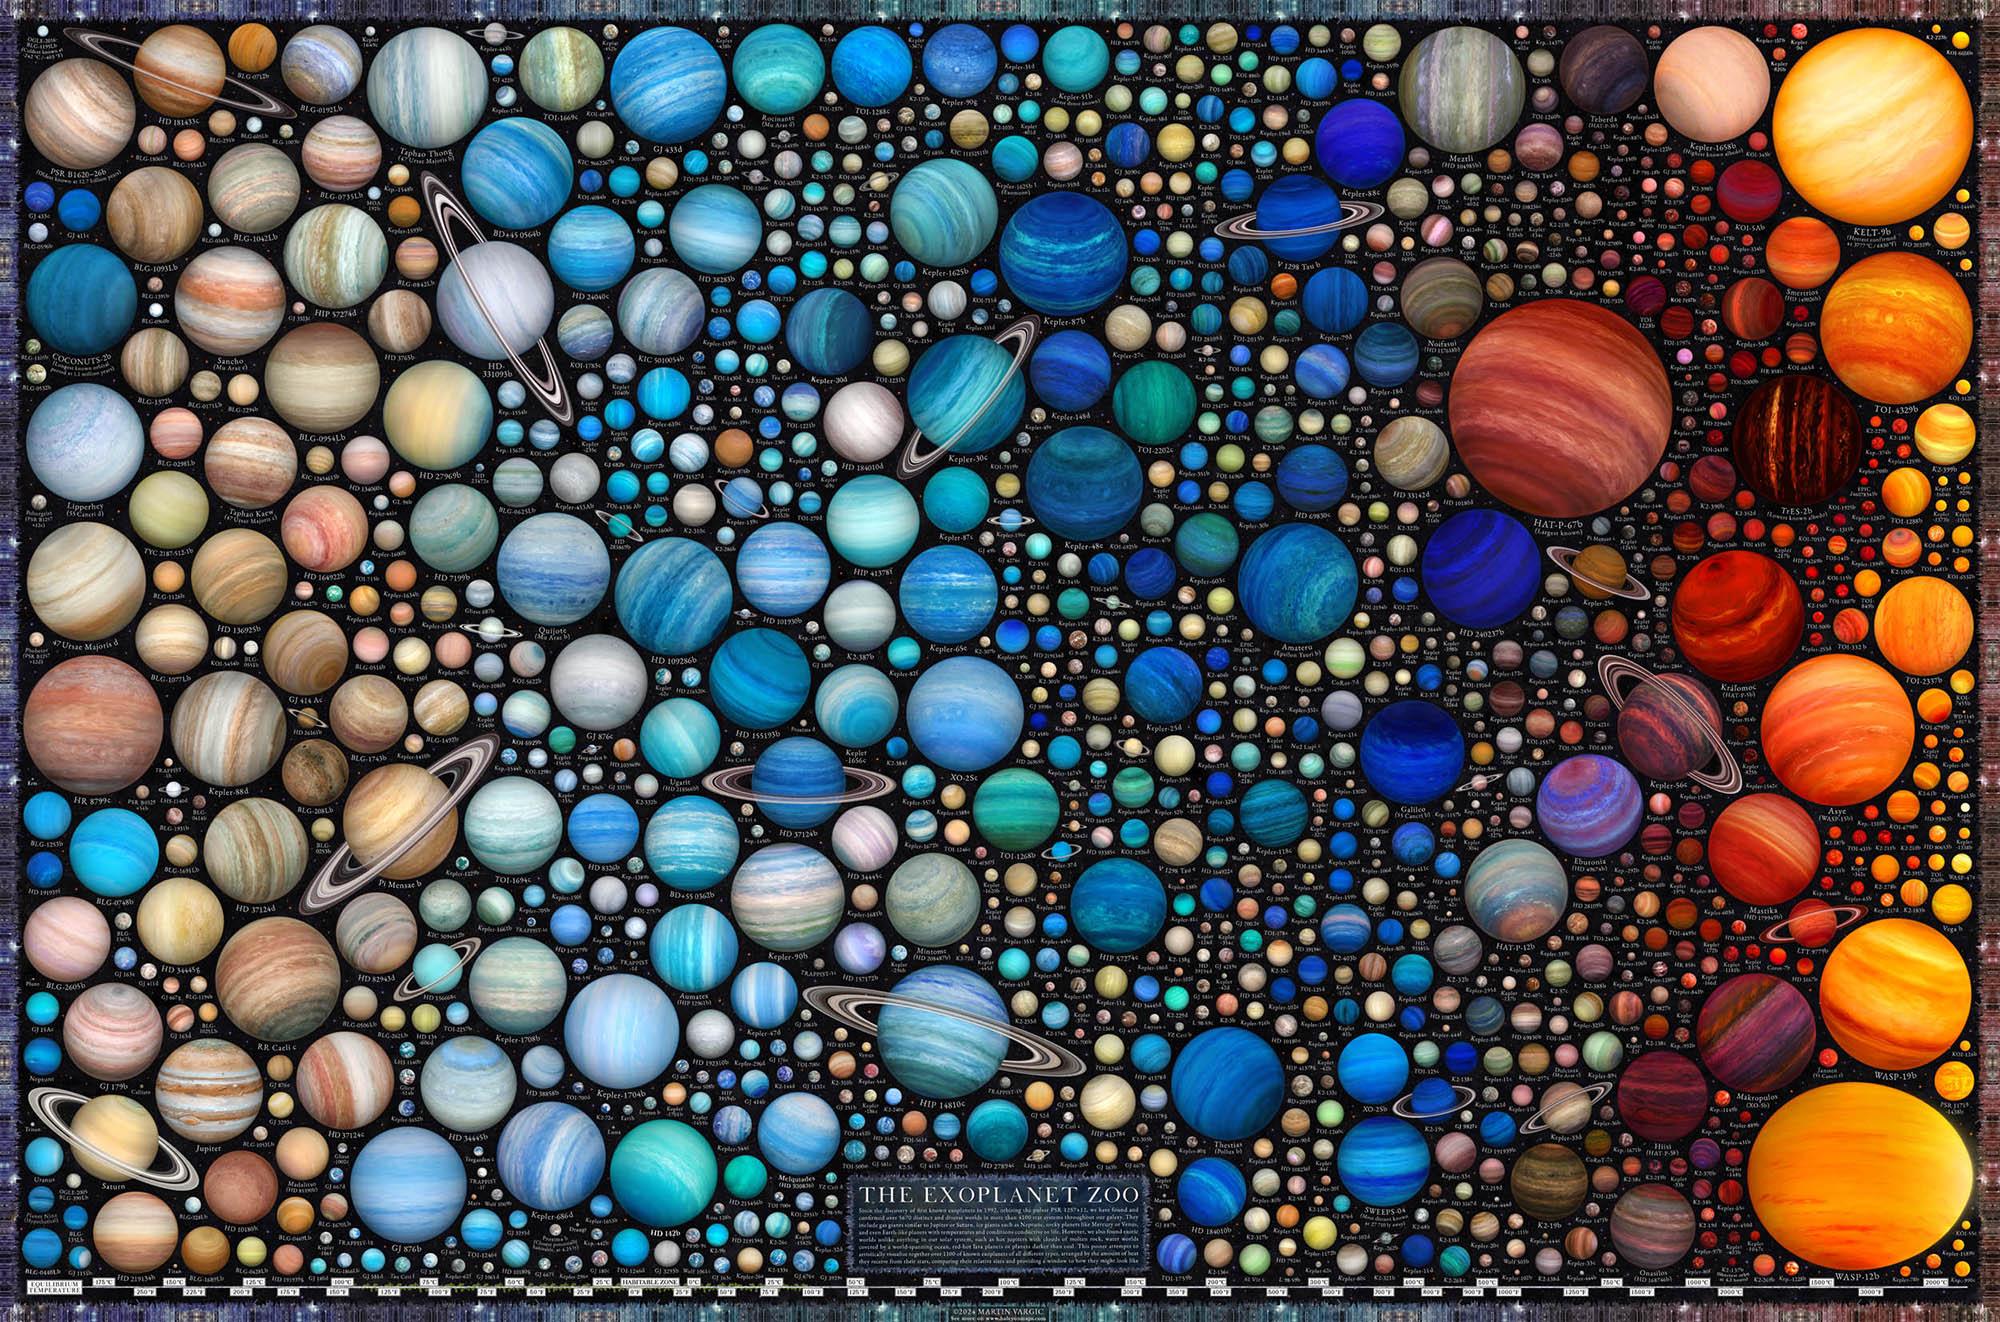 رسم يظهر مئات الكواكب الممكنة، زرقاء في المنتصف، حمراء على اليمين، وحنطيّة على اليسار. بعض الكواكب لديها حلقات.